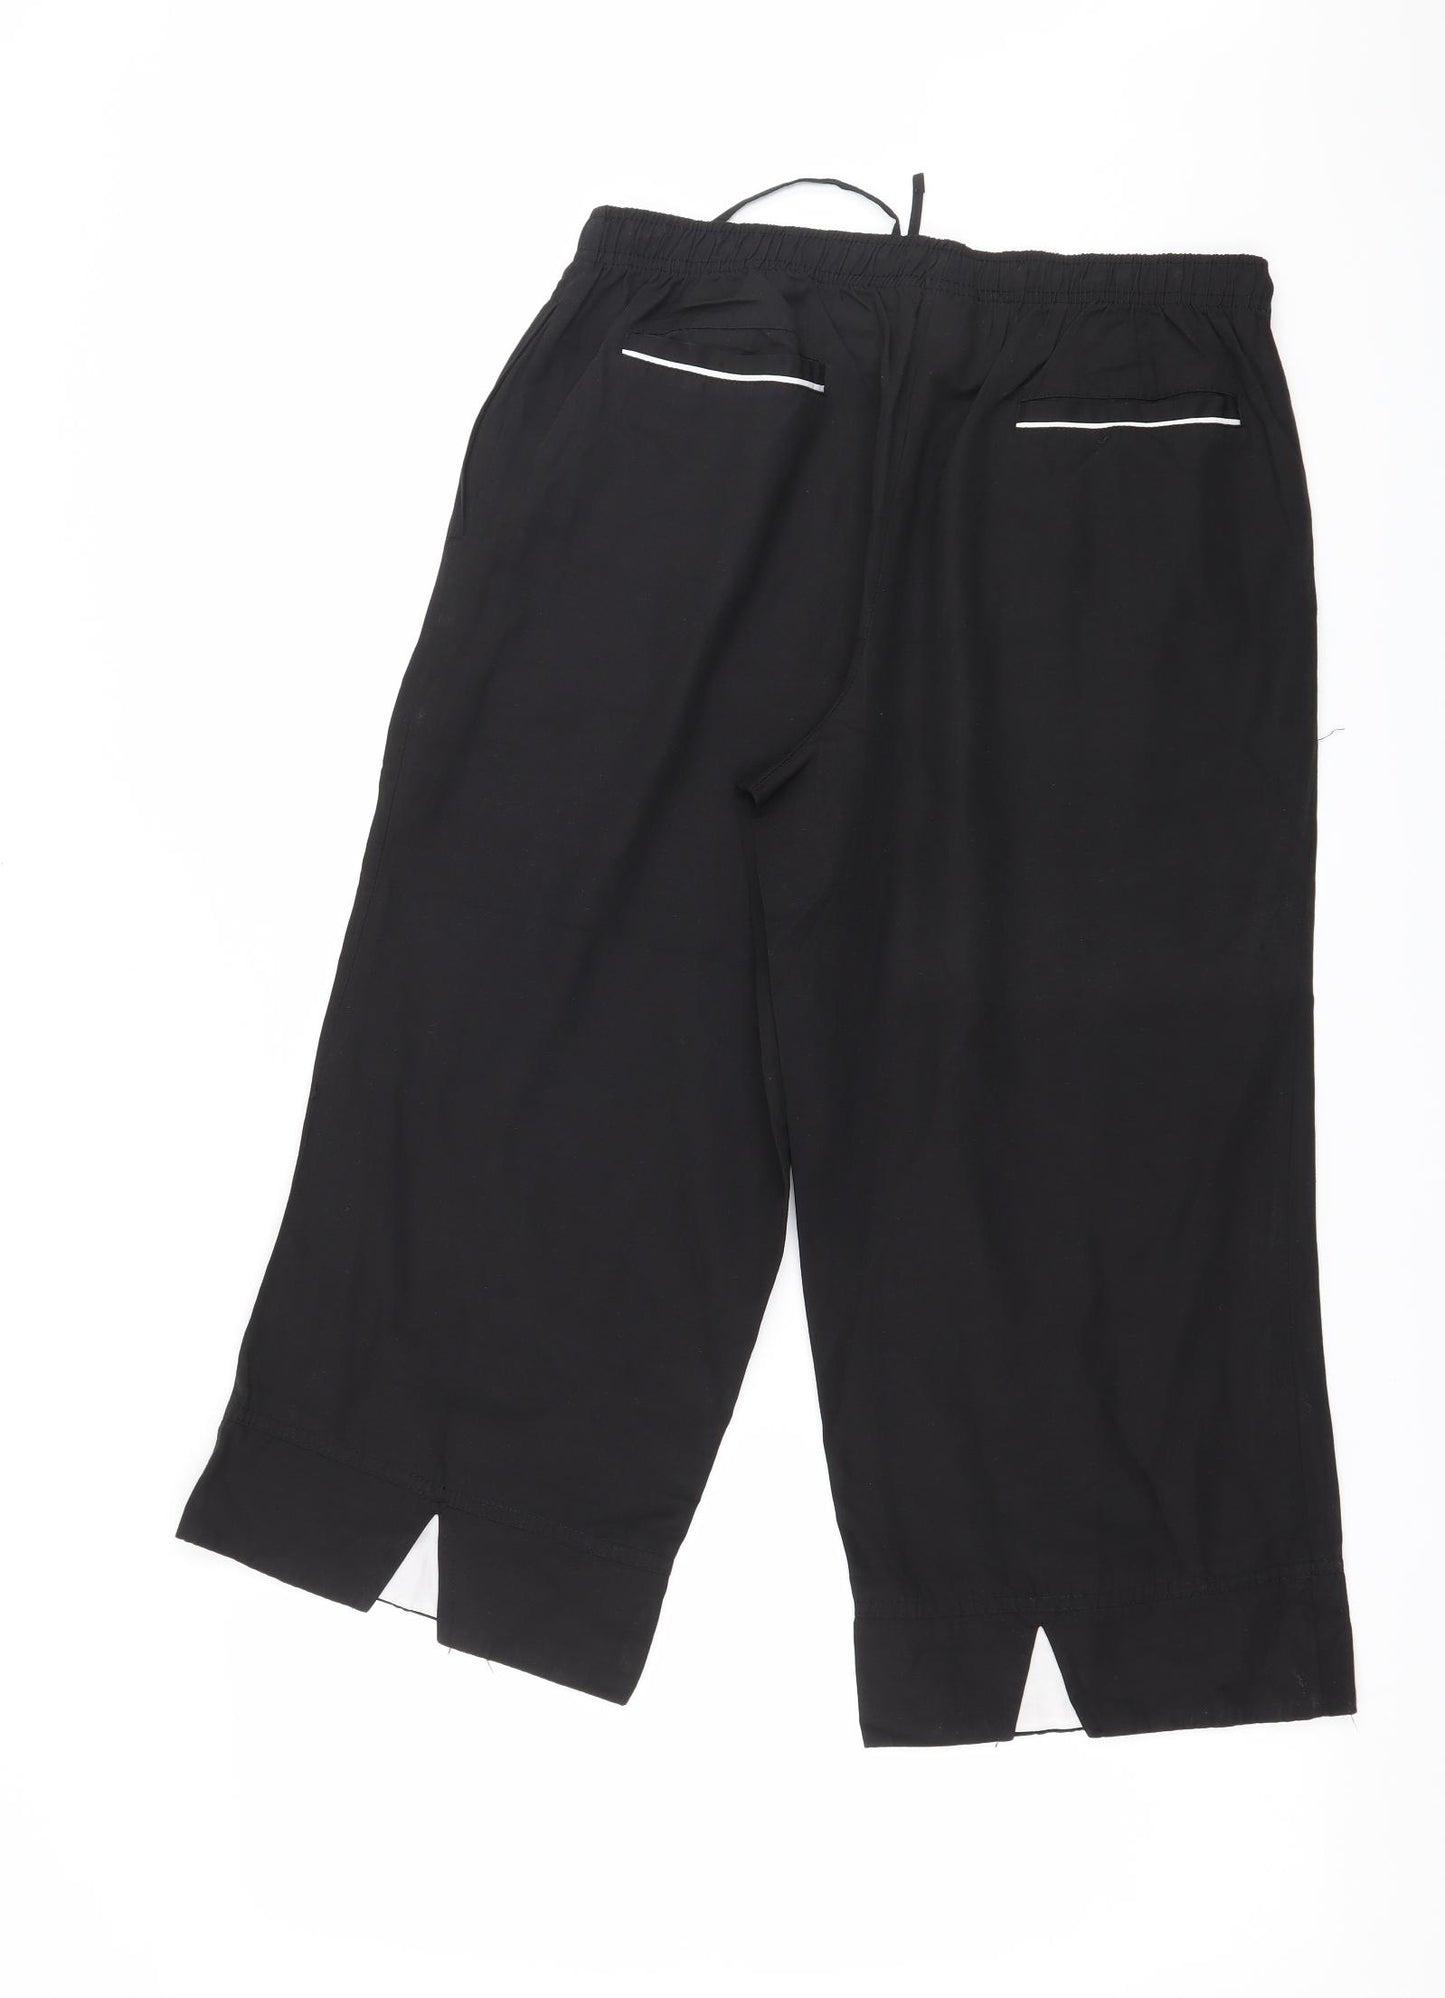 Danskin Womens Black   Jogger Trousers Size 10 L20 in